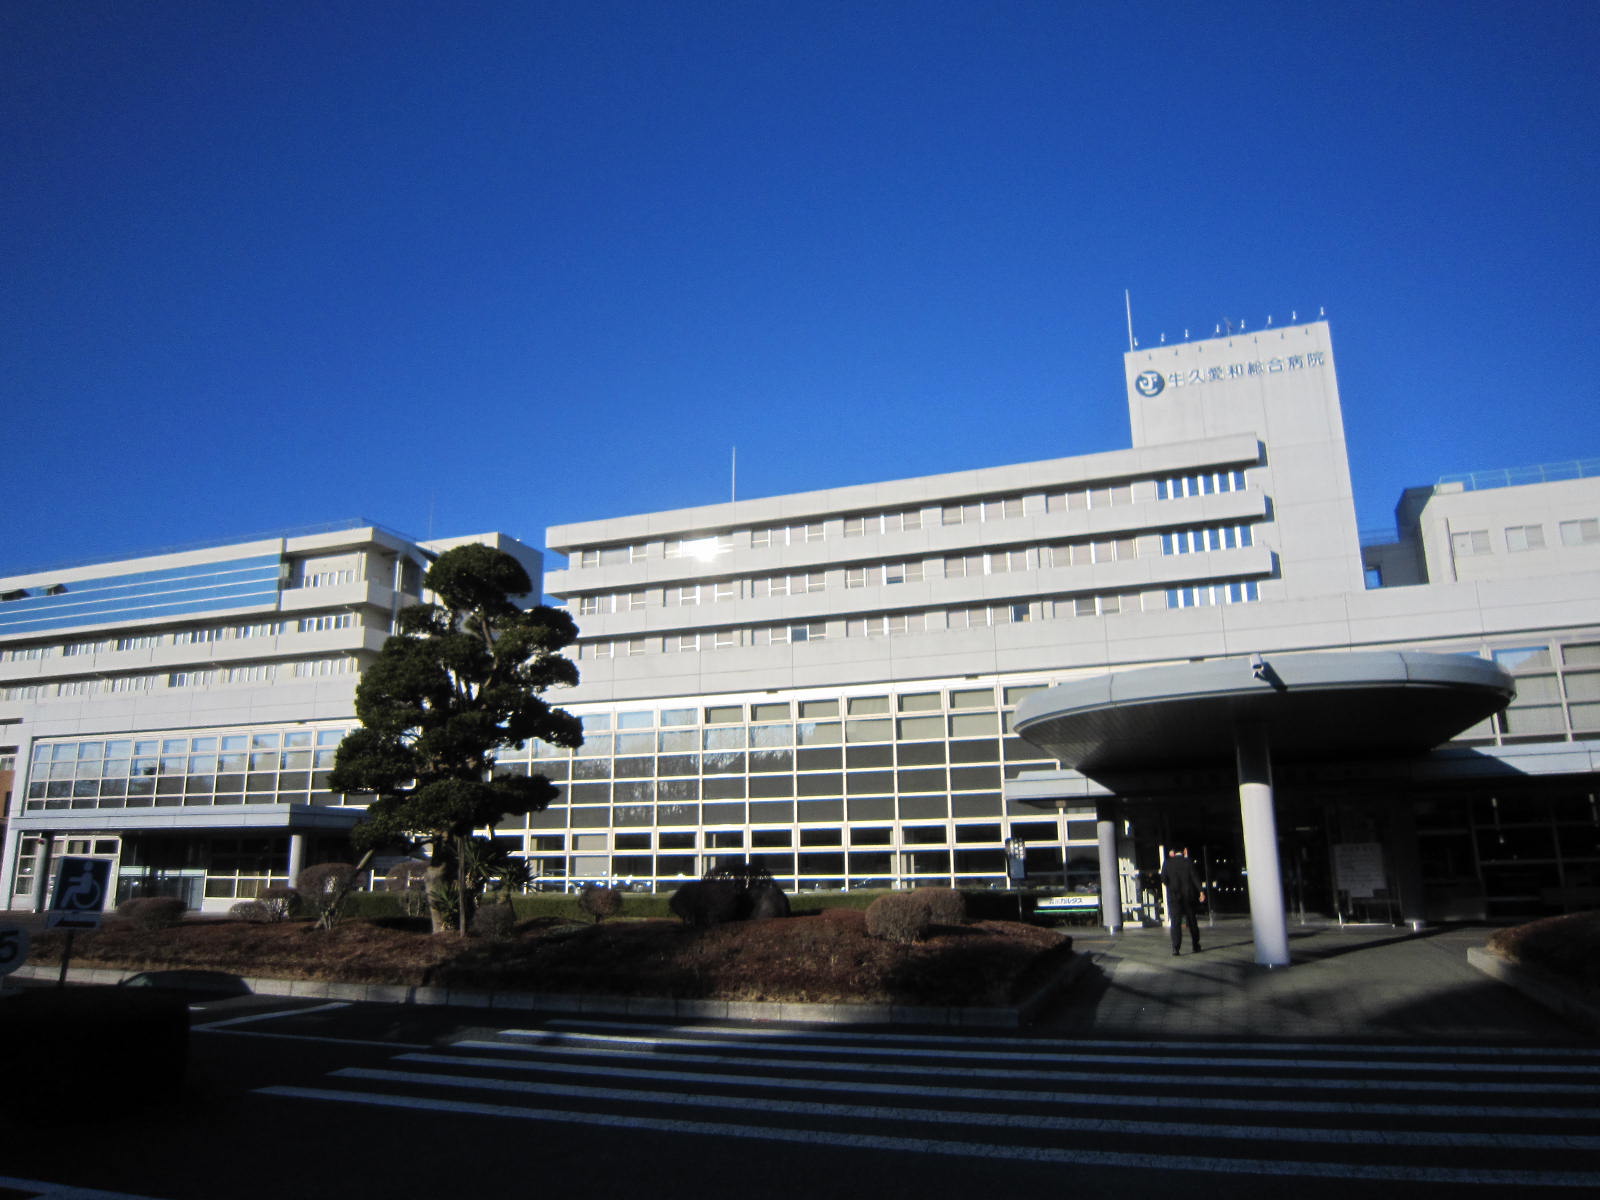 Hospital. Ushikuaiwasogobyoin until the (hospital) 2091m